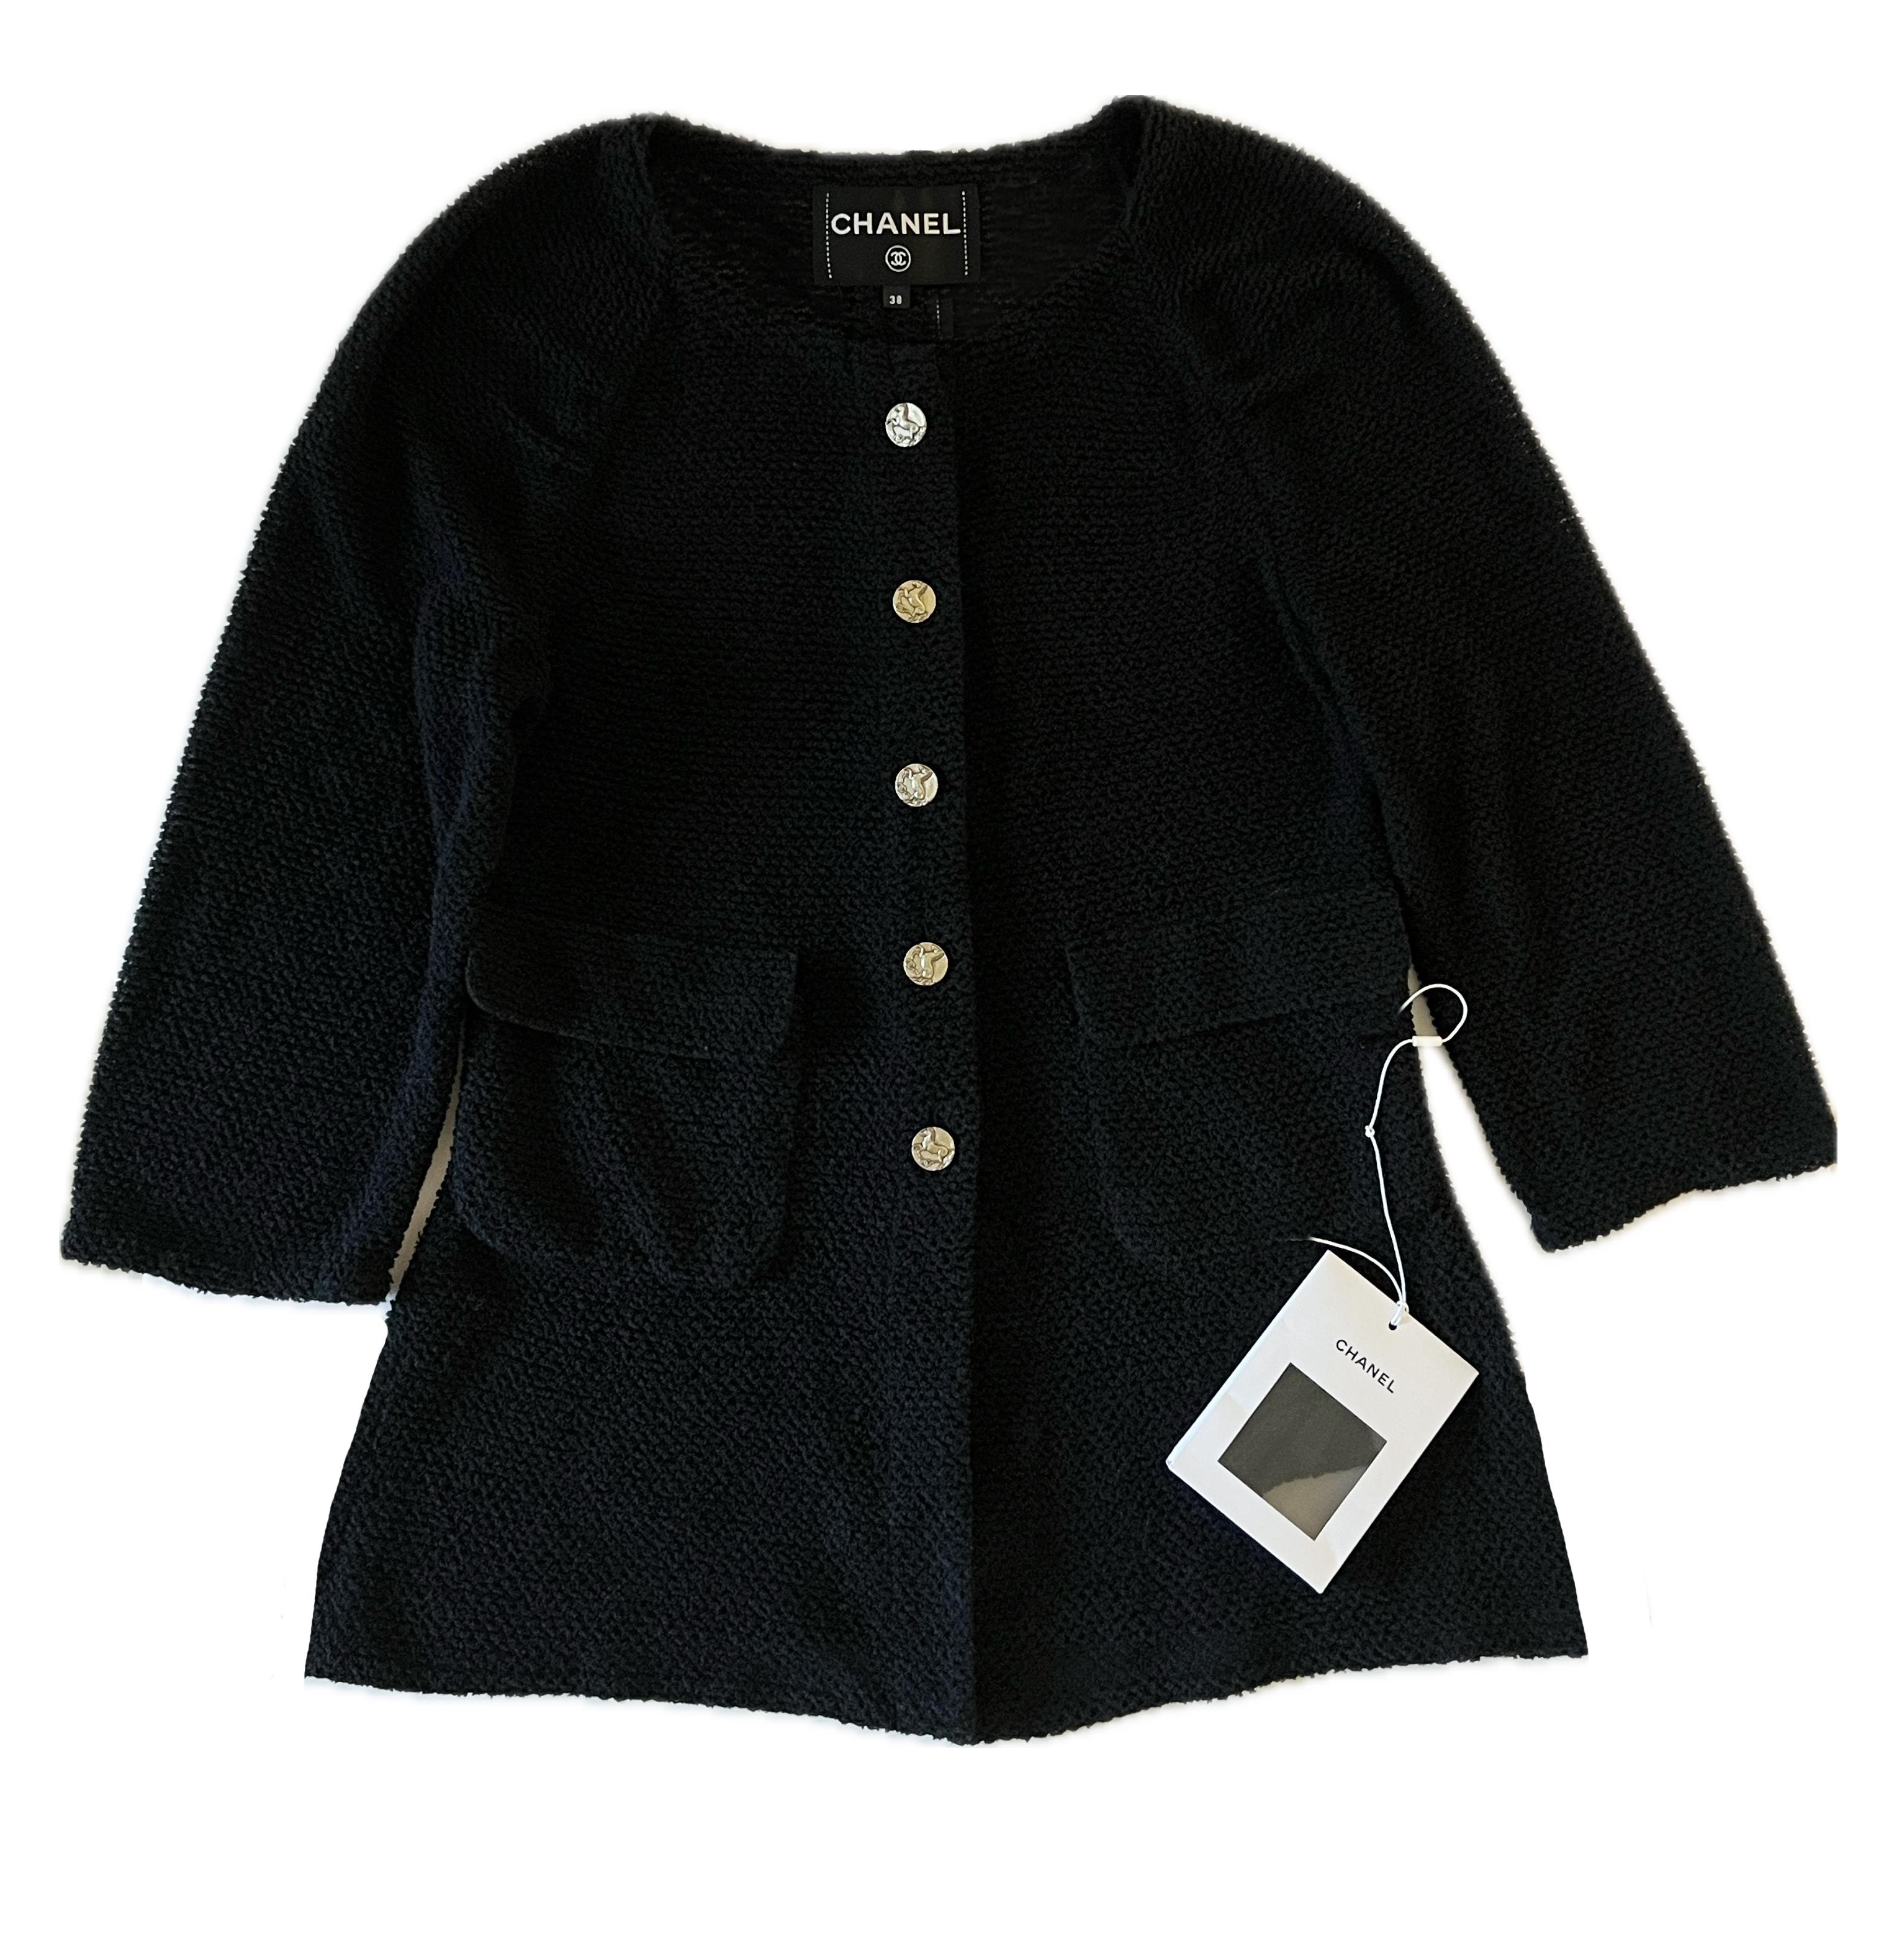 Neue zeitlose Chanel Jacke aus schwarzem Tweed aus Paris / Ancient GREECE Cruise Collection
- CC Logo antike Knöpfe
Größenbezeichnung 38 FR. Wird mit einem Beutel mit extra Stoffmustern geliefert.